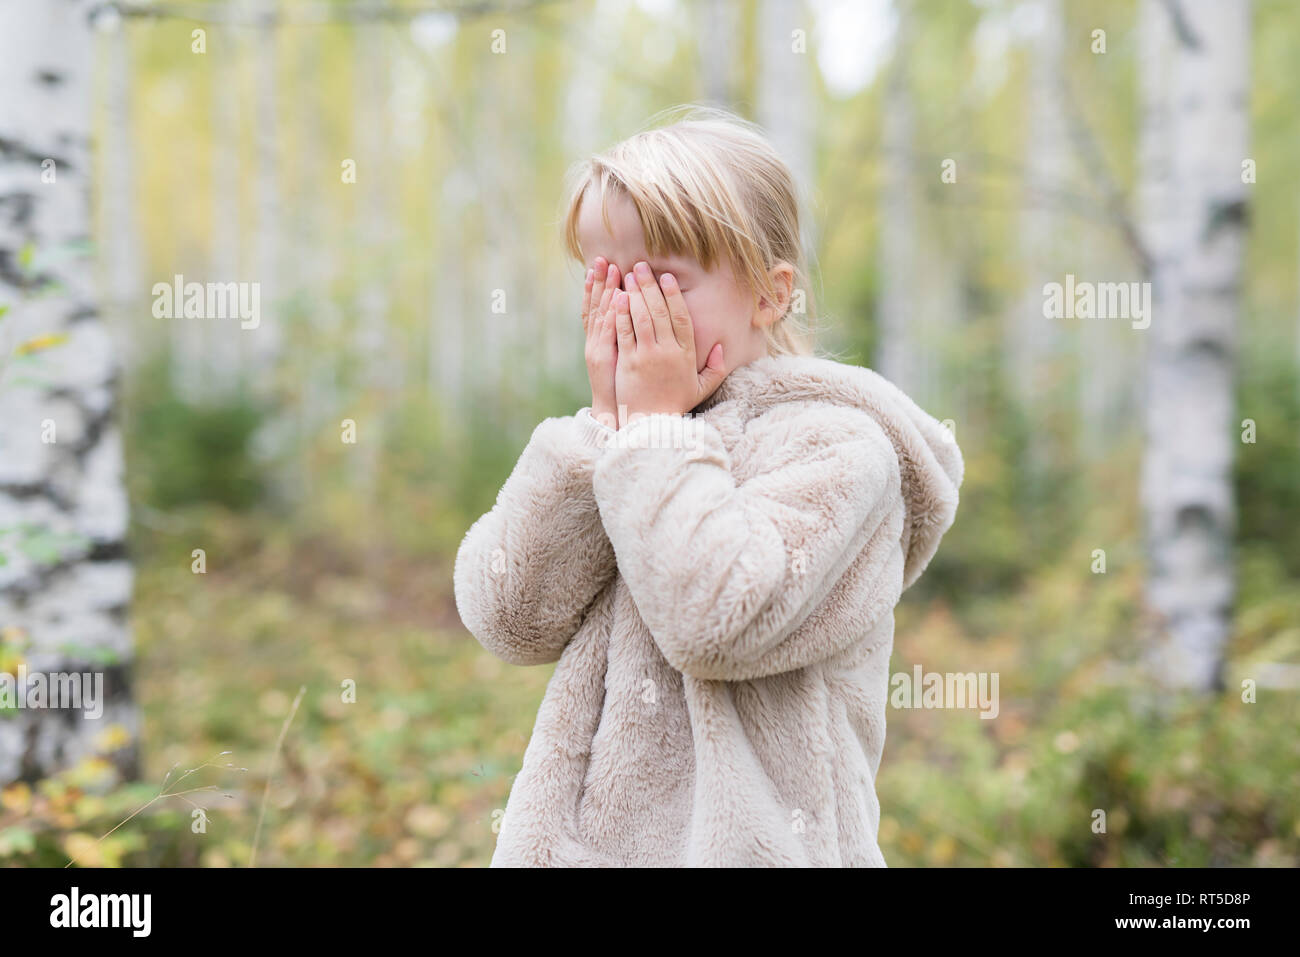 Fille blonde joue à cache-cache dans une forêt Banque D'Images